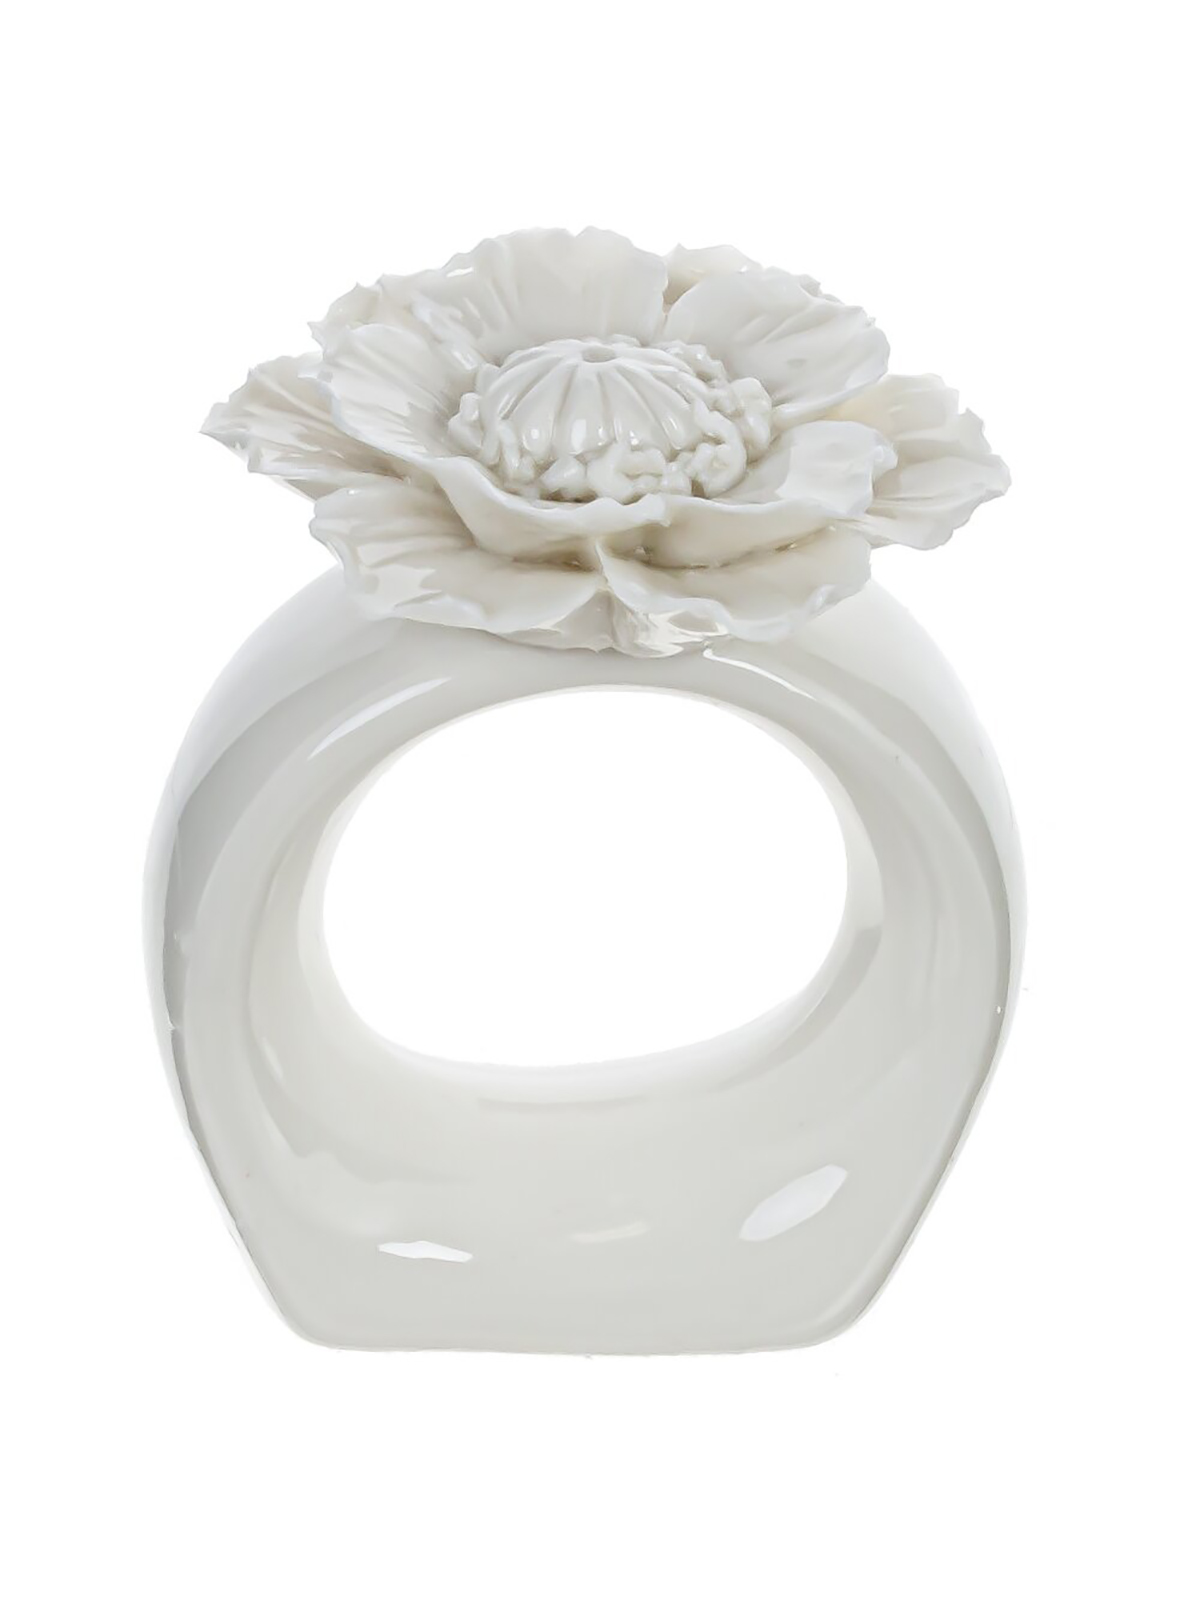 Кольцо для салфеток Remecoclub 795310 Цветок белый